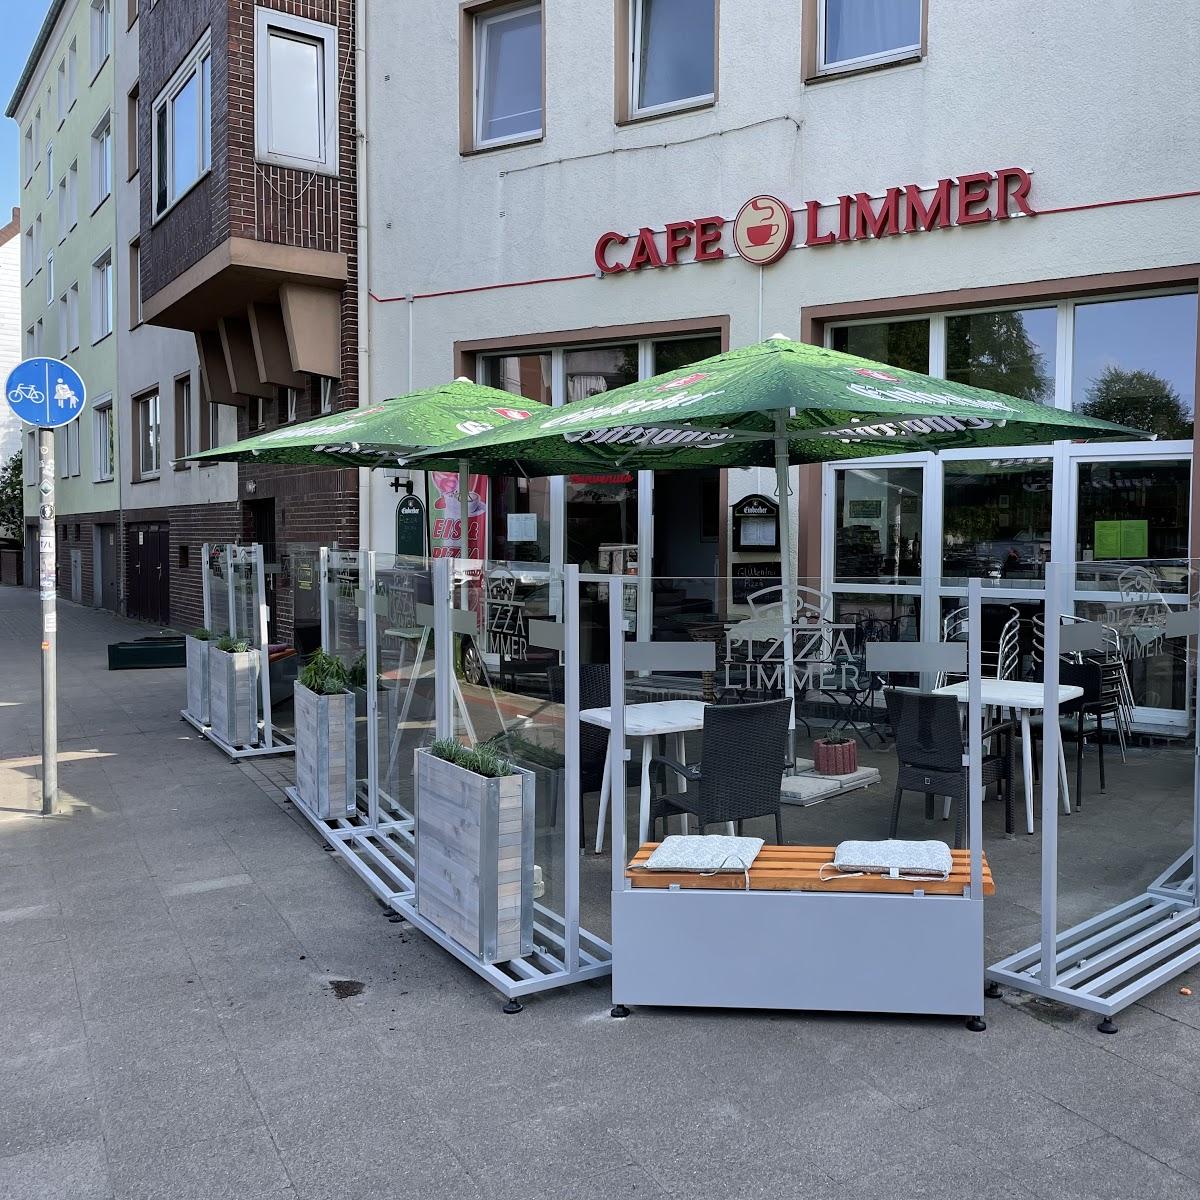 Restaurant "Cafe Limmer" in Hannover